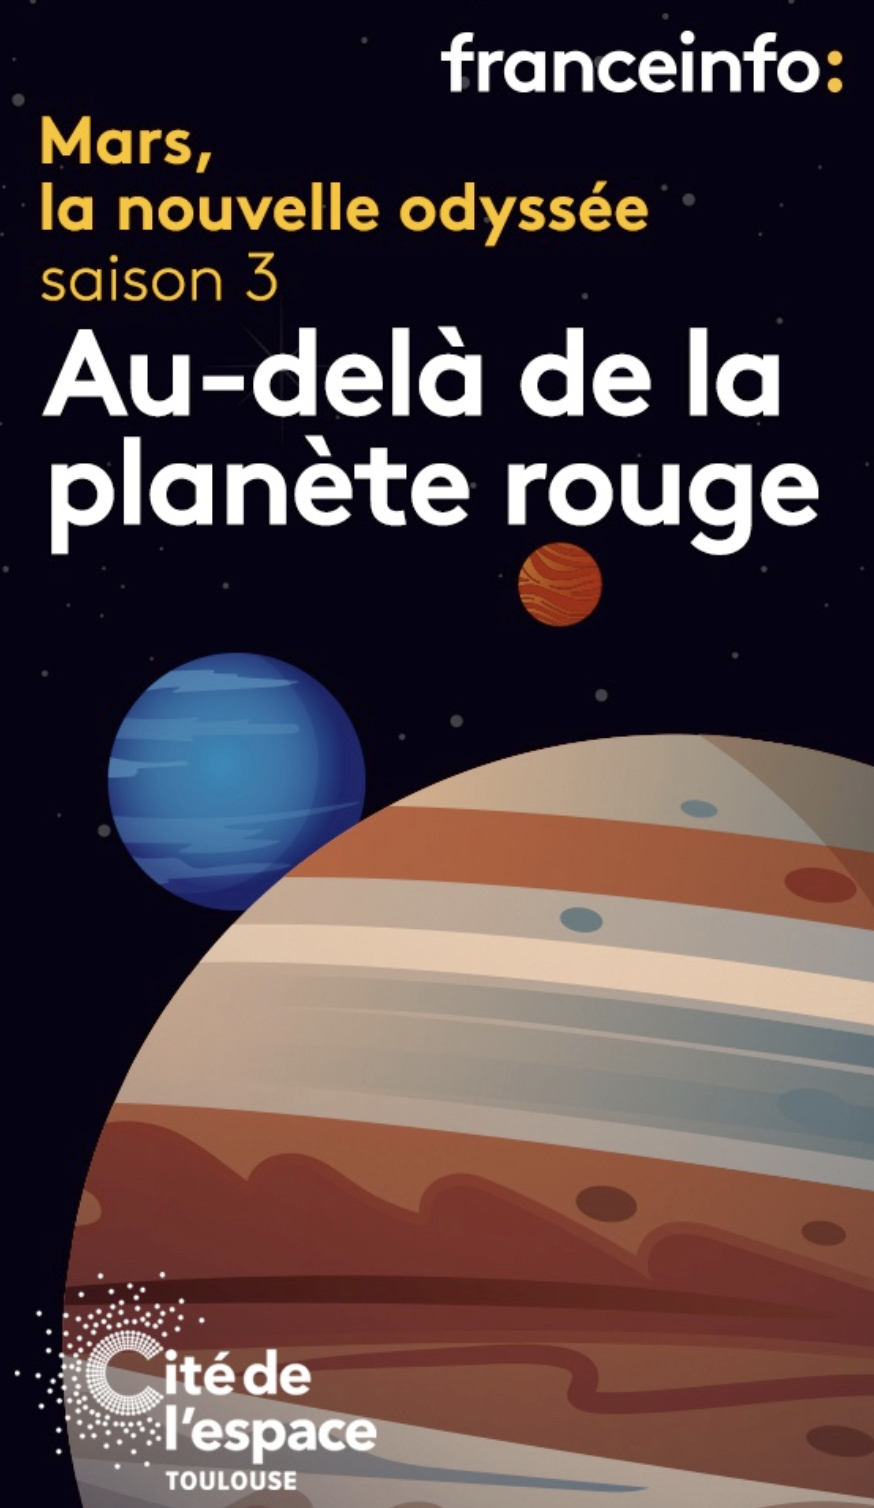 "Mars, la nouvelle odyssée" : le nouveau podcast de franceinfo